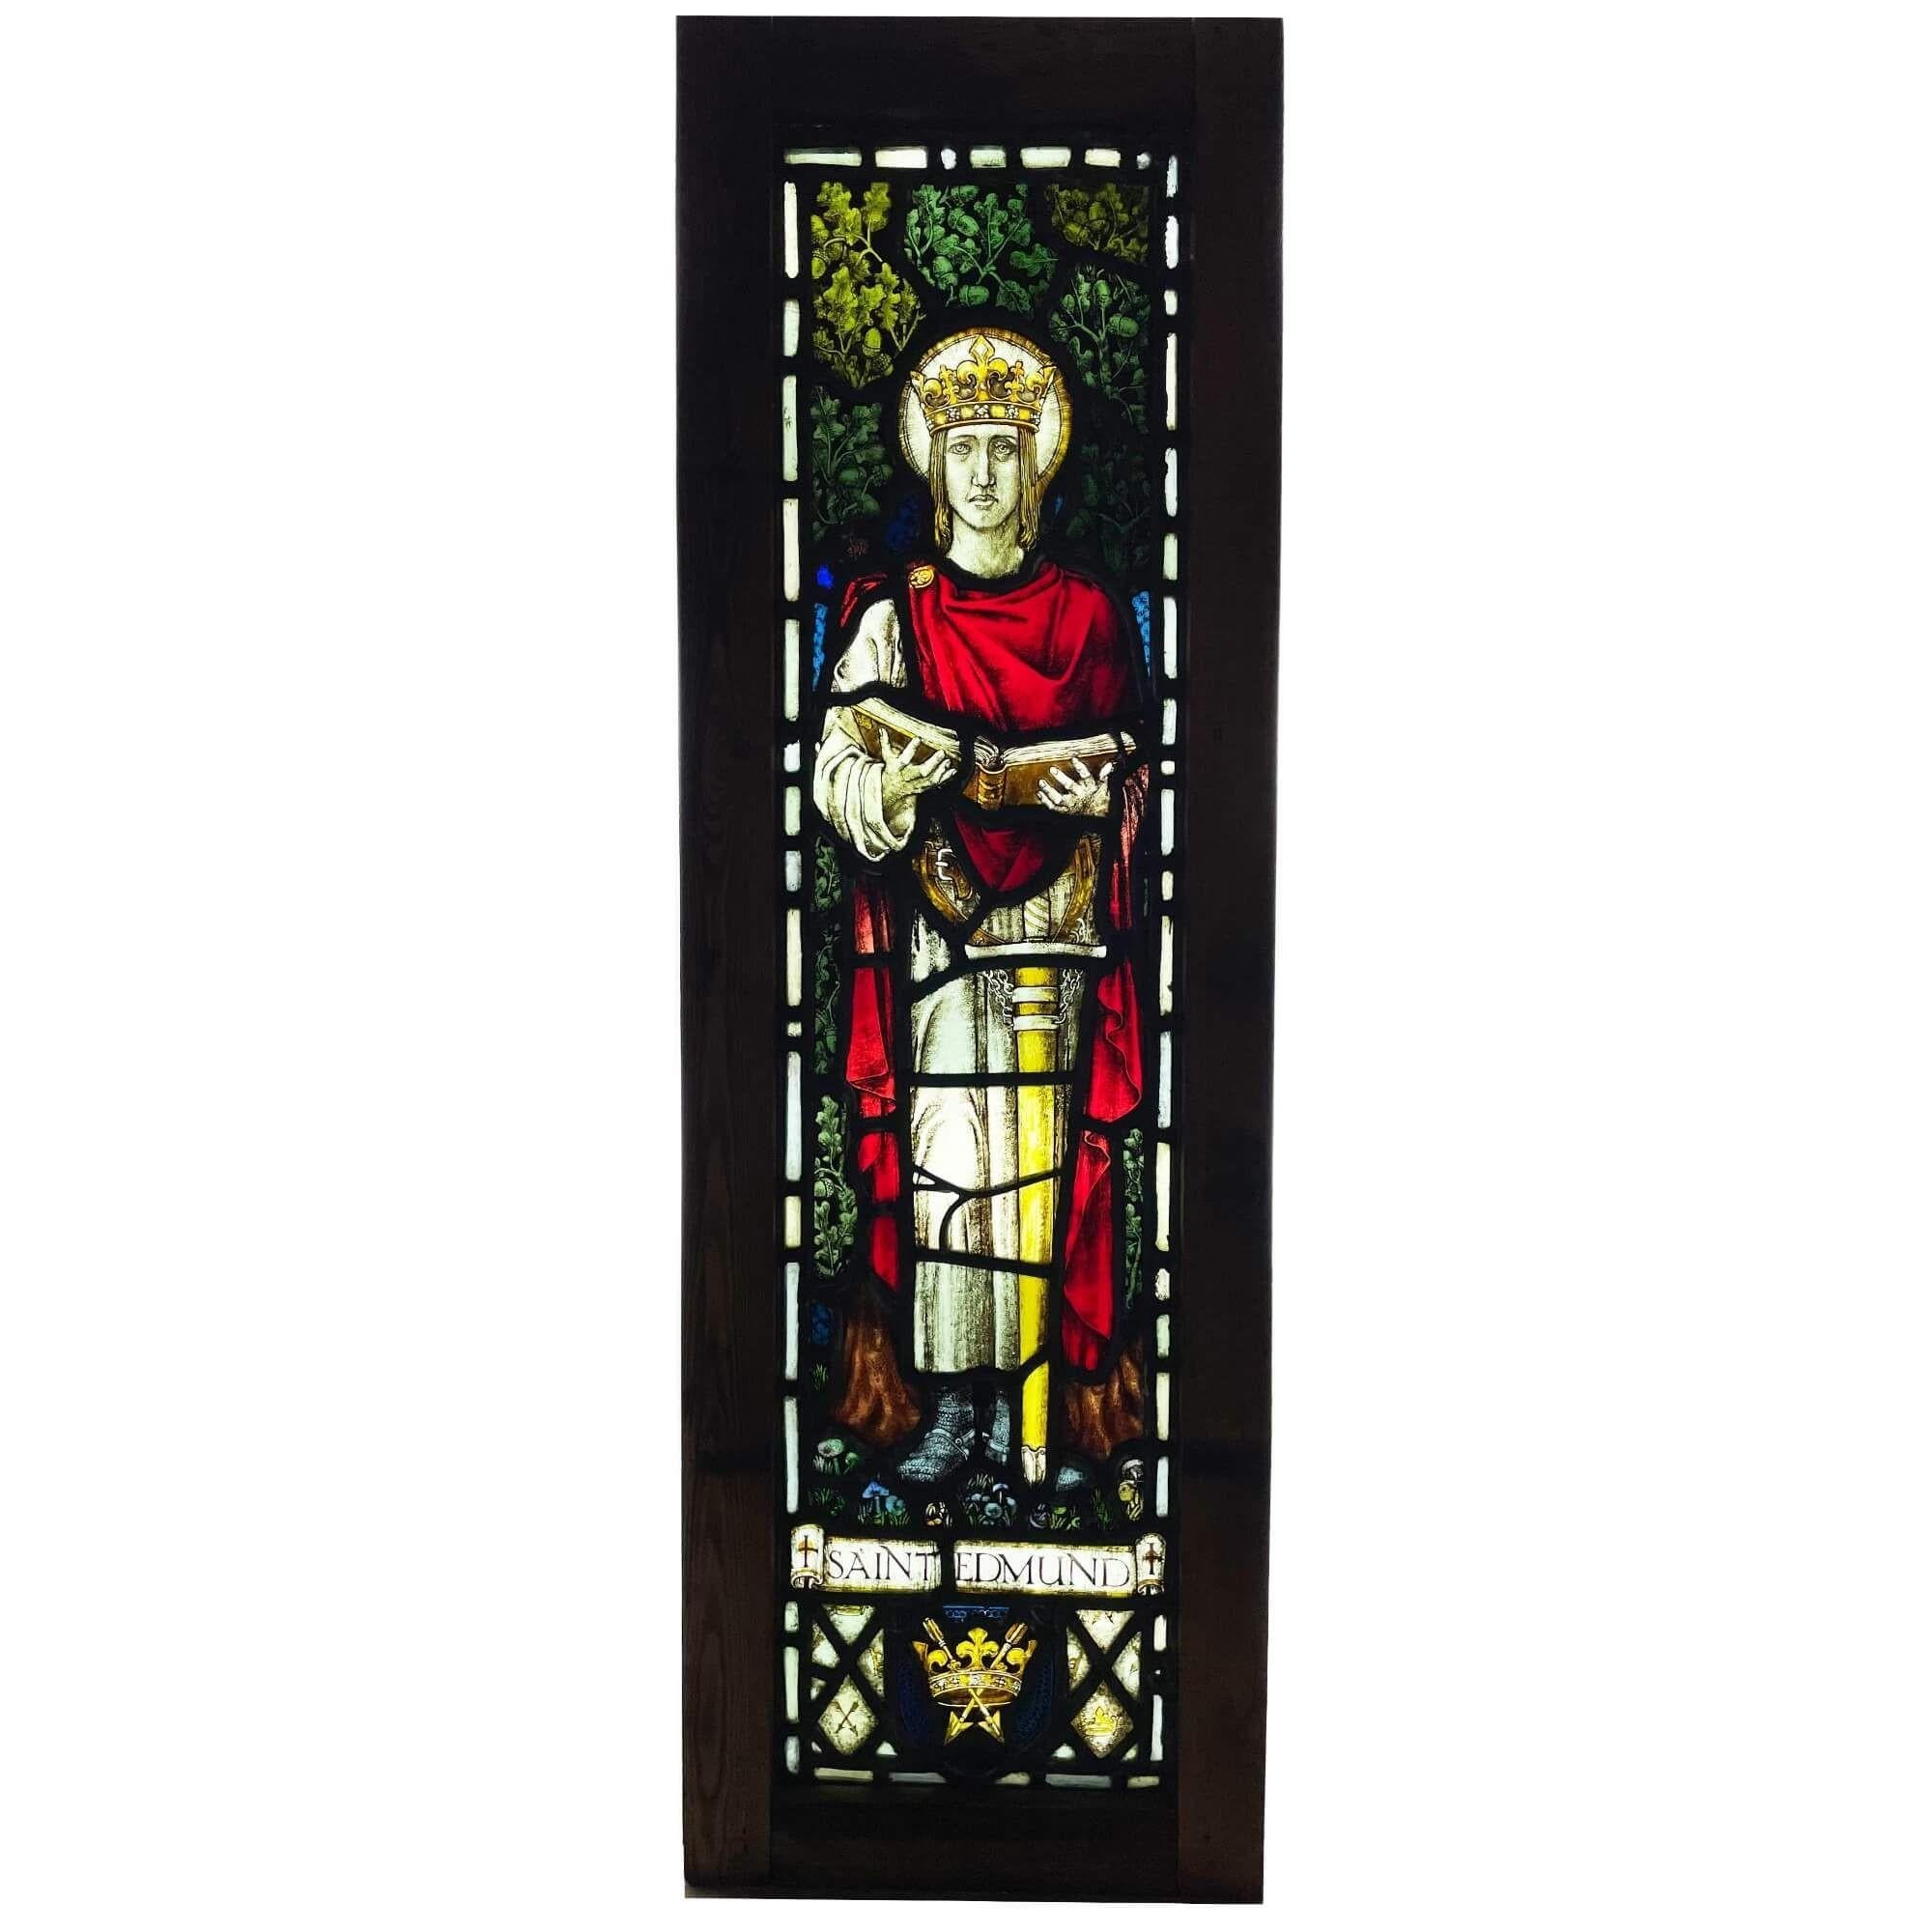 Ein antikes Kirchenfenster mit der Darstellung des Heiligen Edmund, das aus der Beeleigh-Abtei stammt. Dieses dramatische Glasfenster zeigt den 